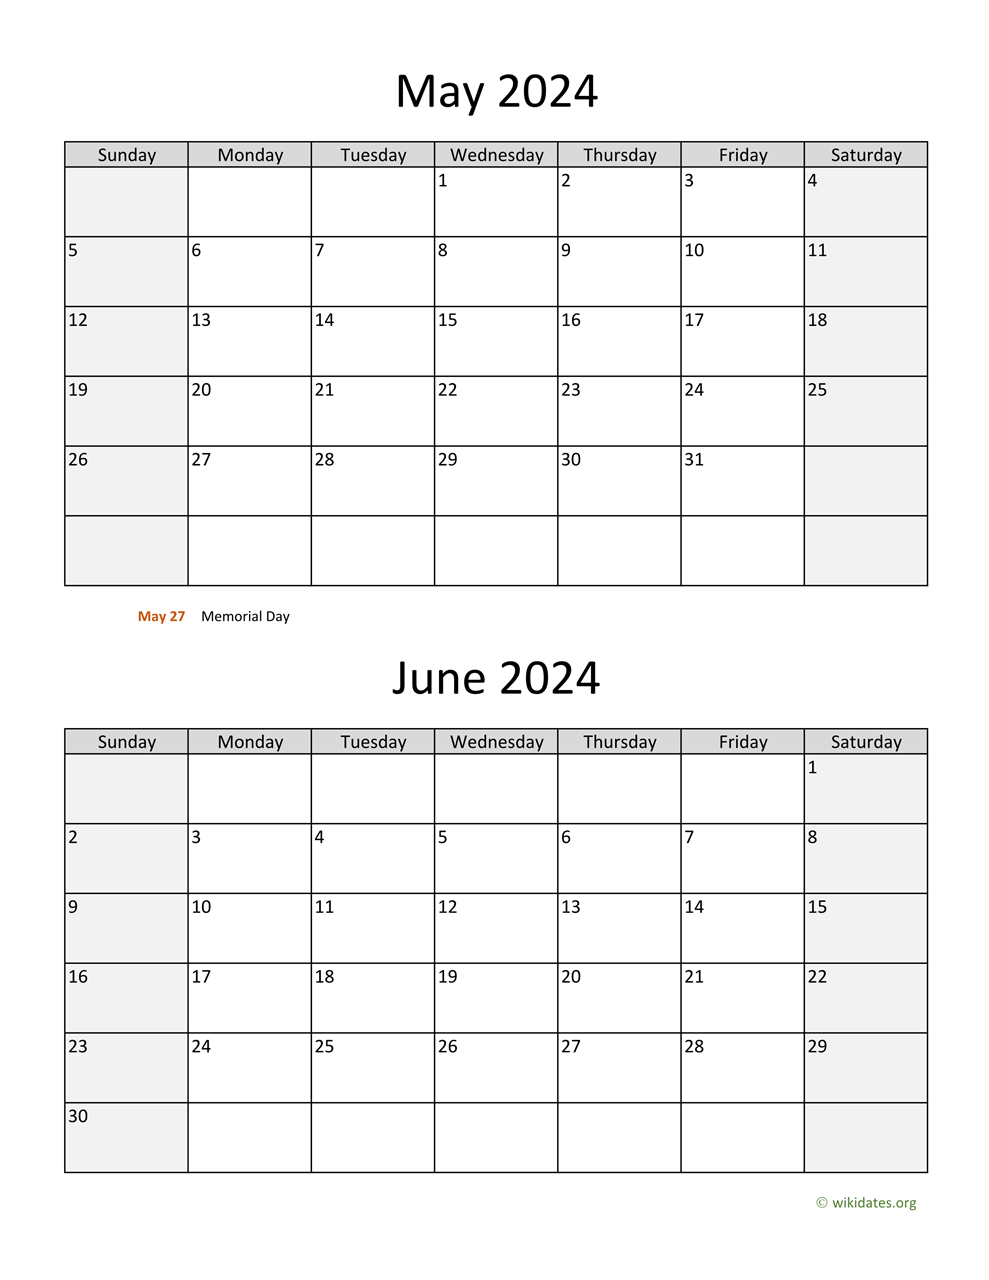 May And June 2024 Calendar | Wikidates for Printable May/June 2024 Calendar